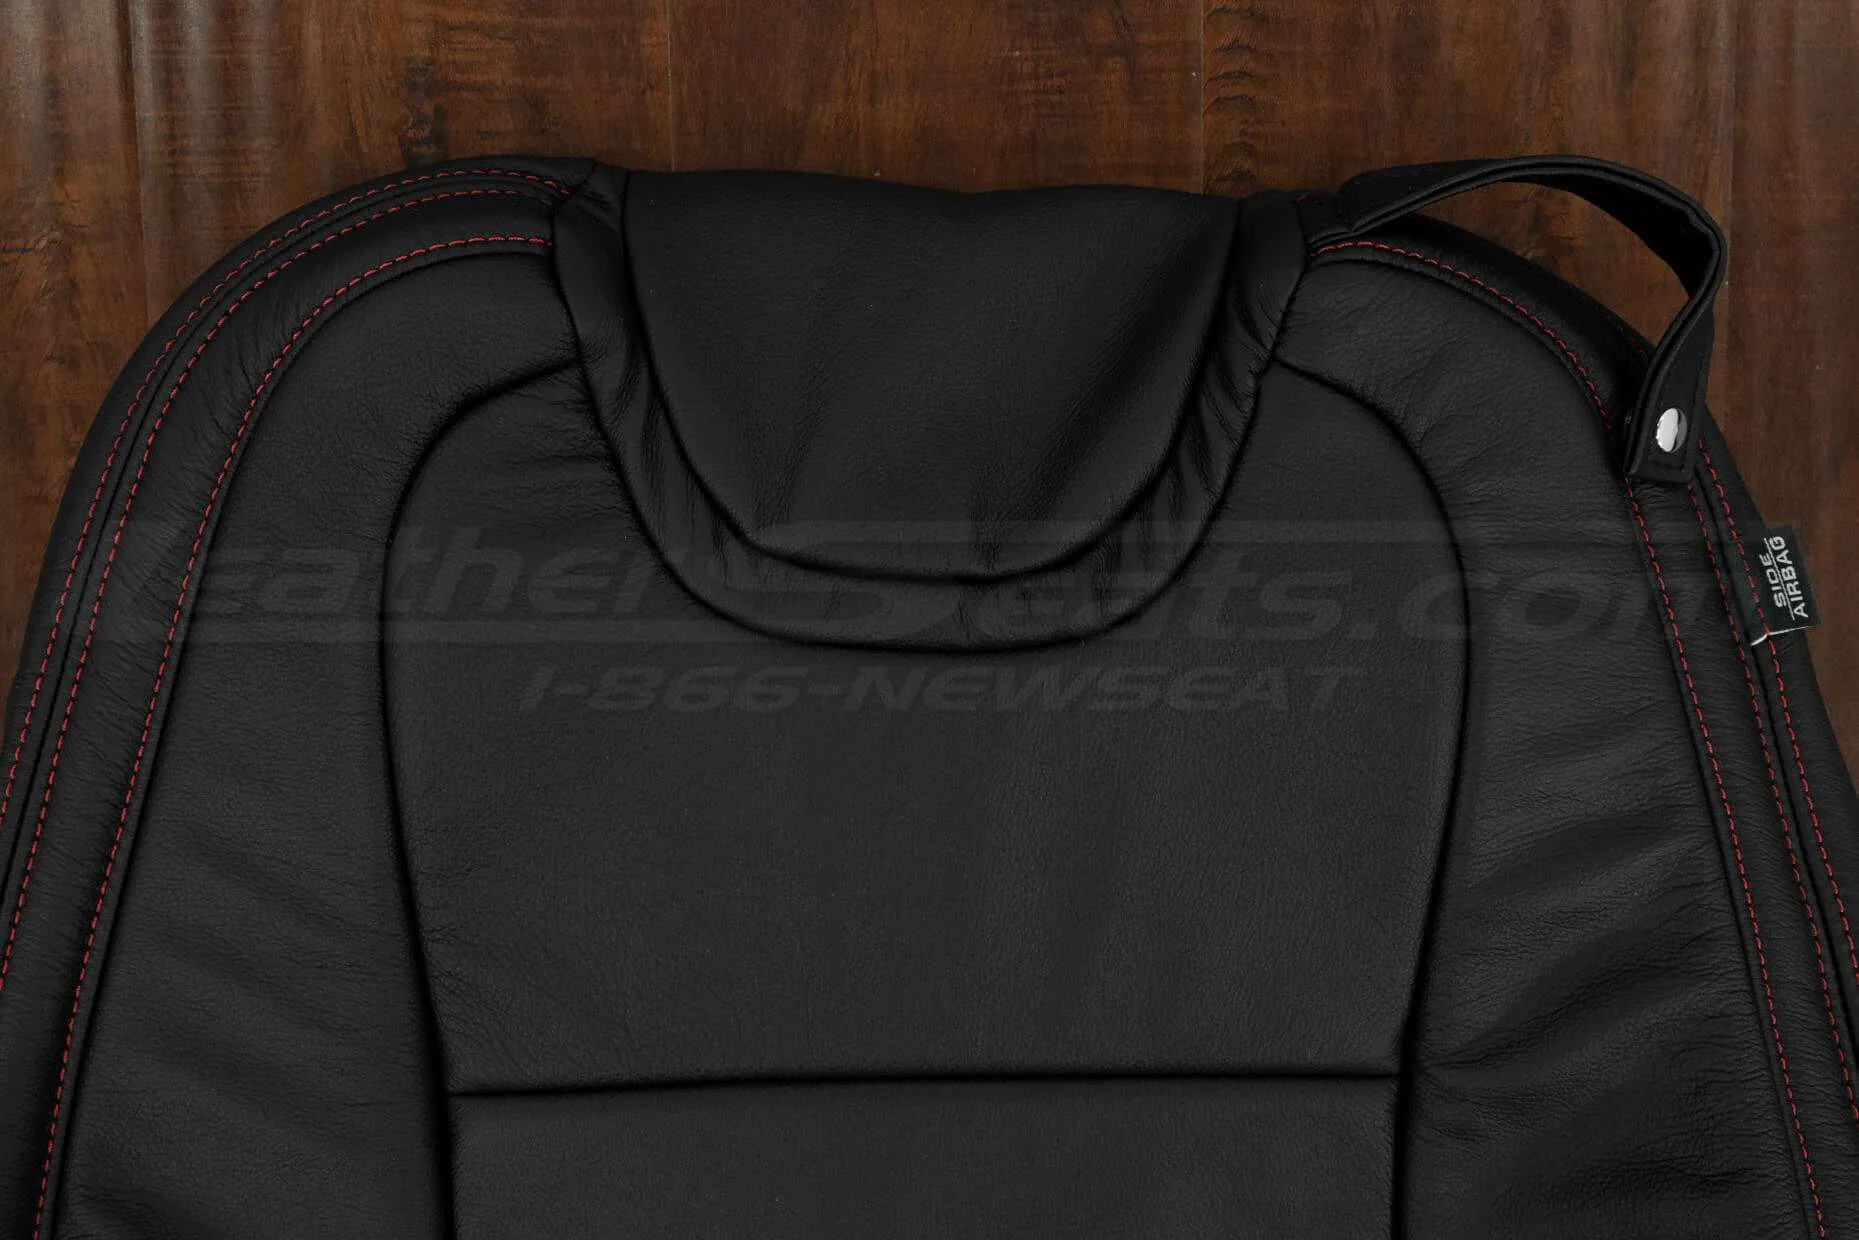 10-15 Chevrolet Camaro Upholstery Kit - Black - Upper section of backrest